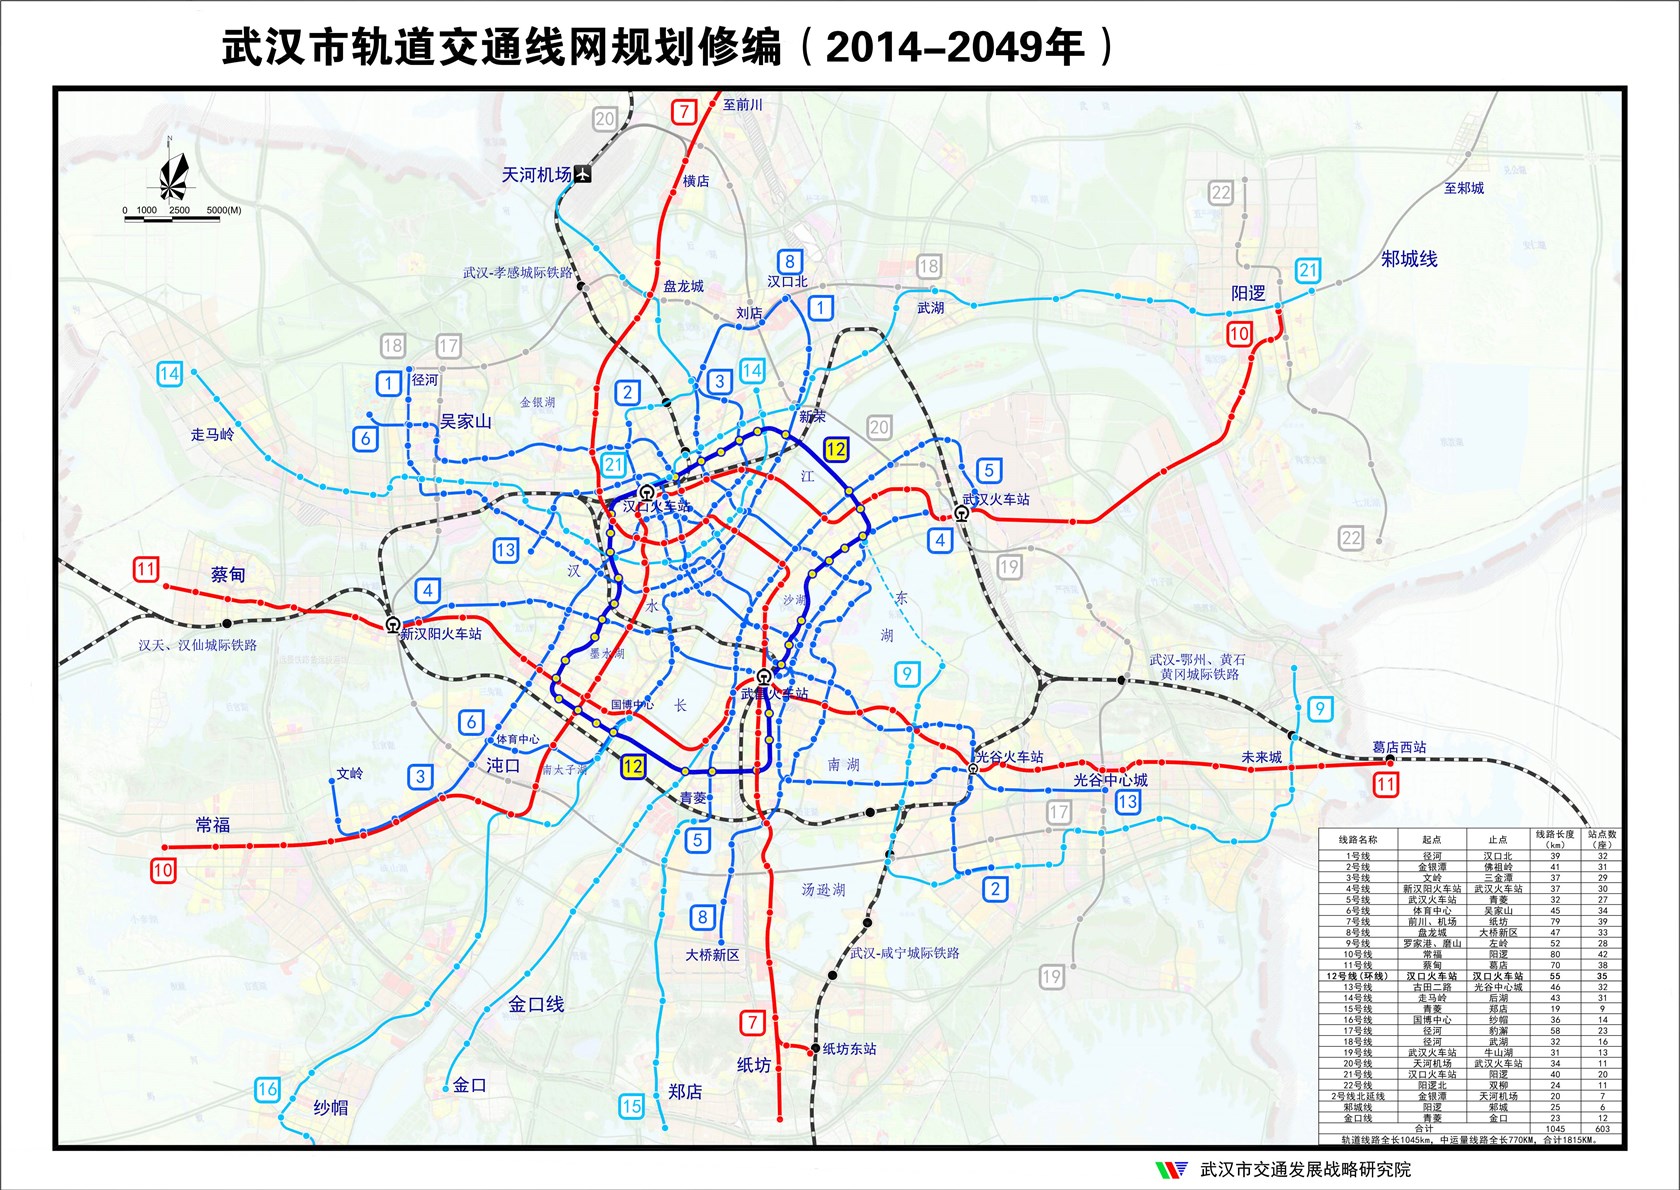 根据武汉市空间布局和客流需求,形成环 放射,四网合一(即高铁网